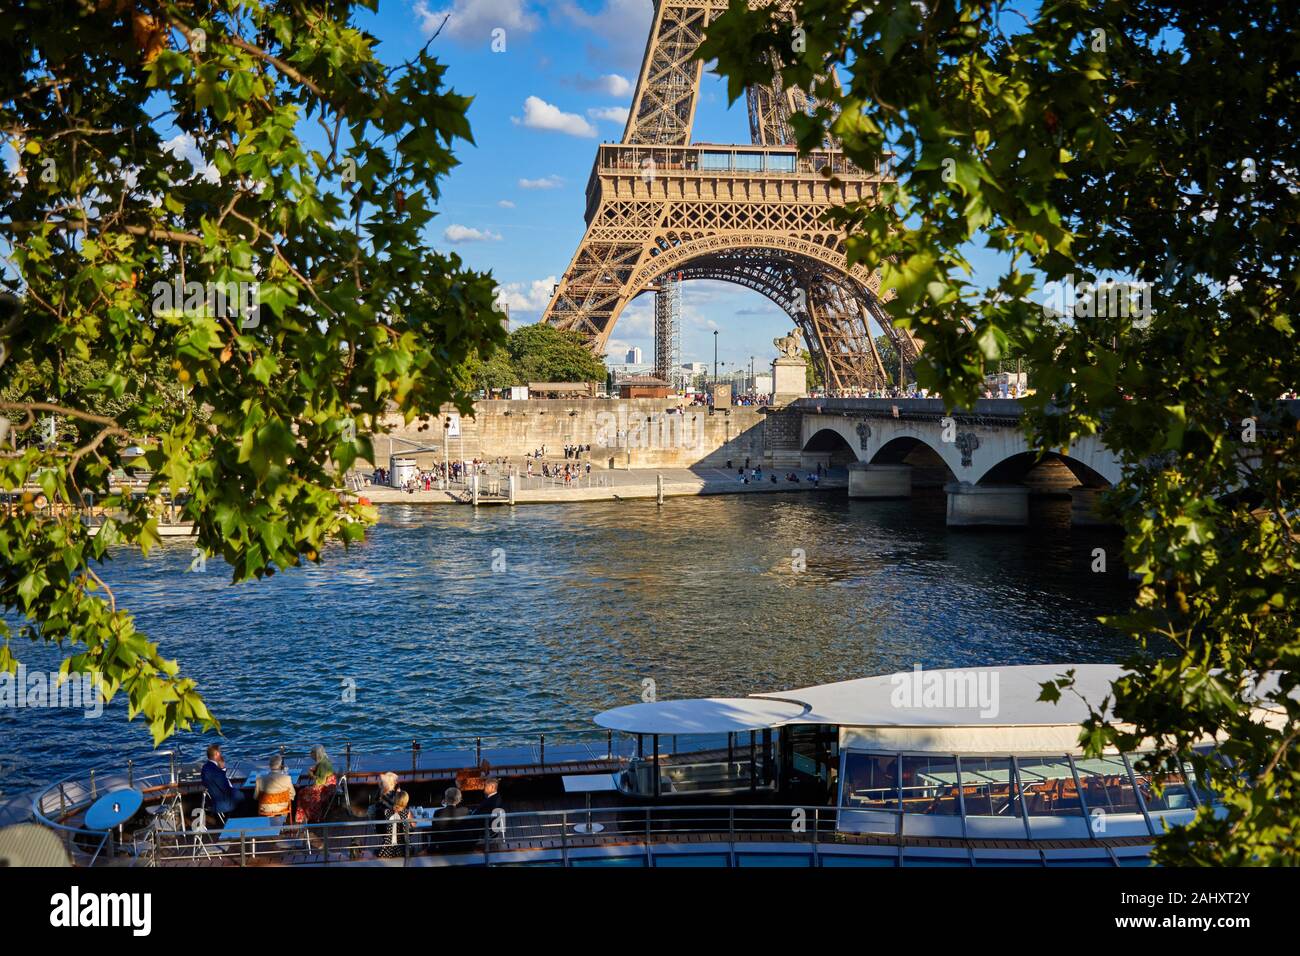 Tourist boat, Eiffel tower, River Seine, Paris, France Stock Photo